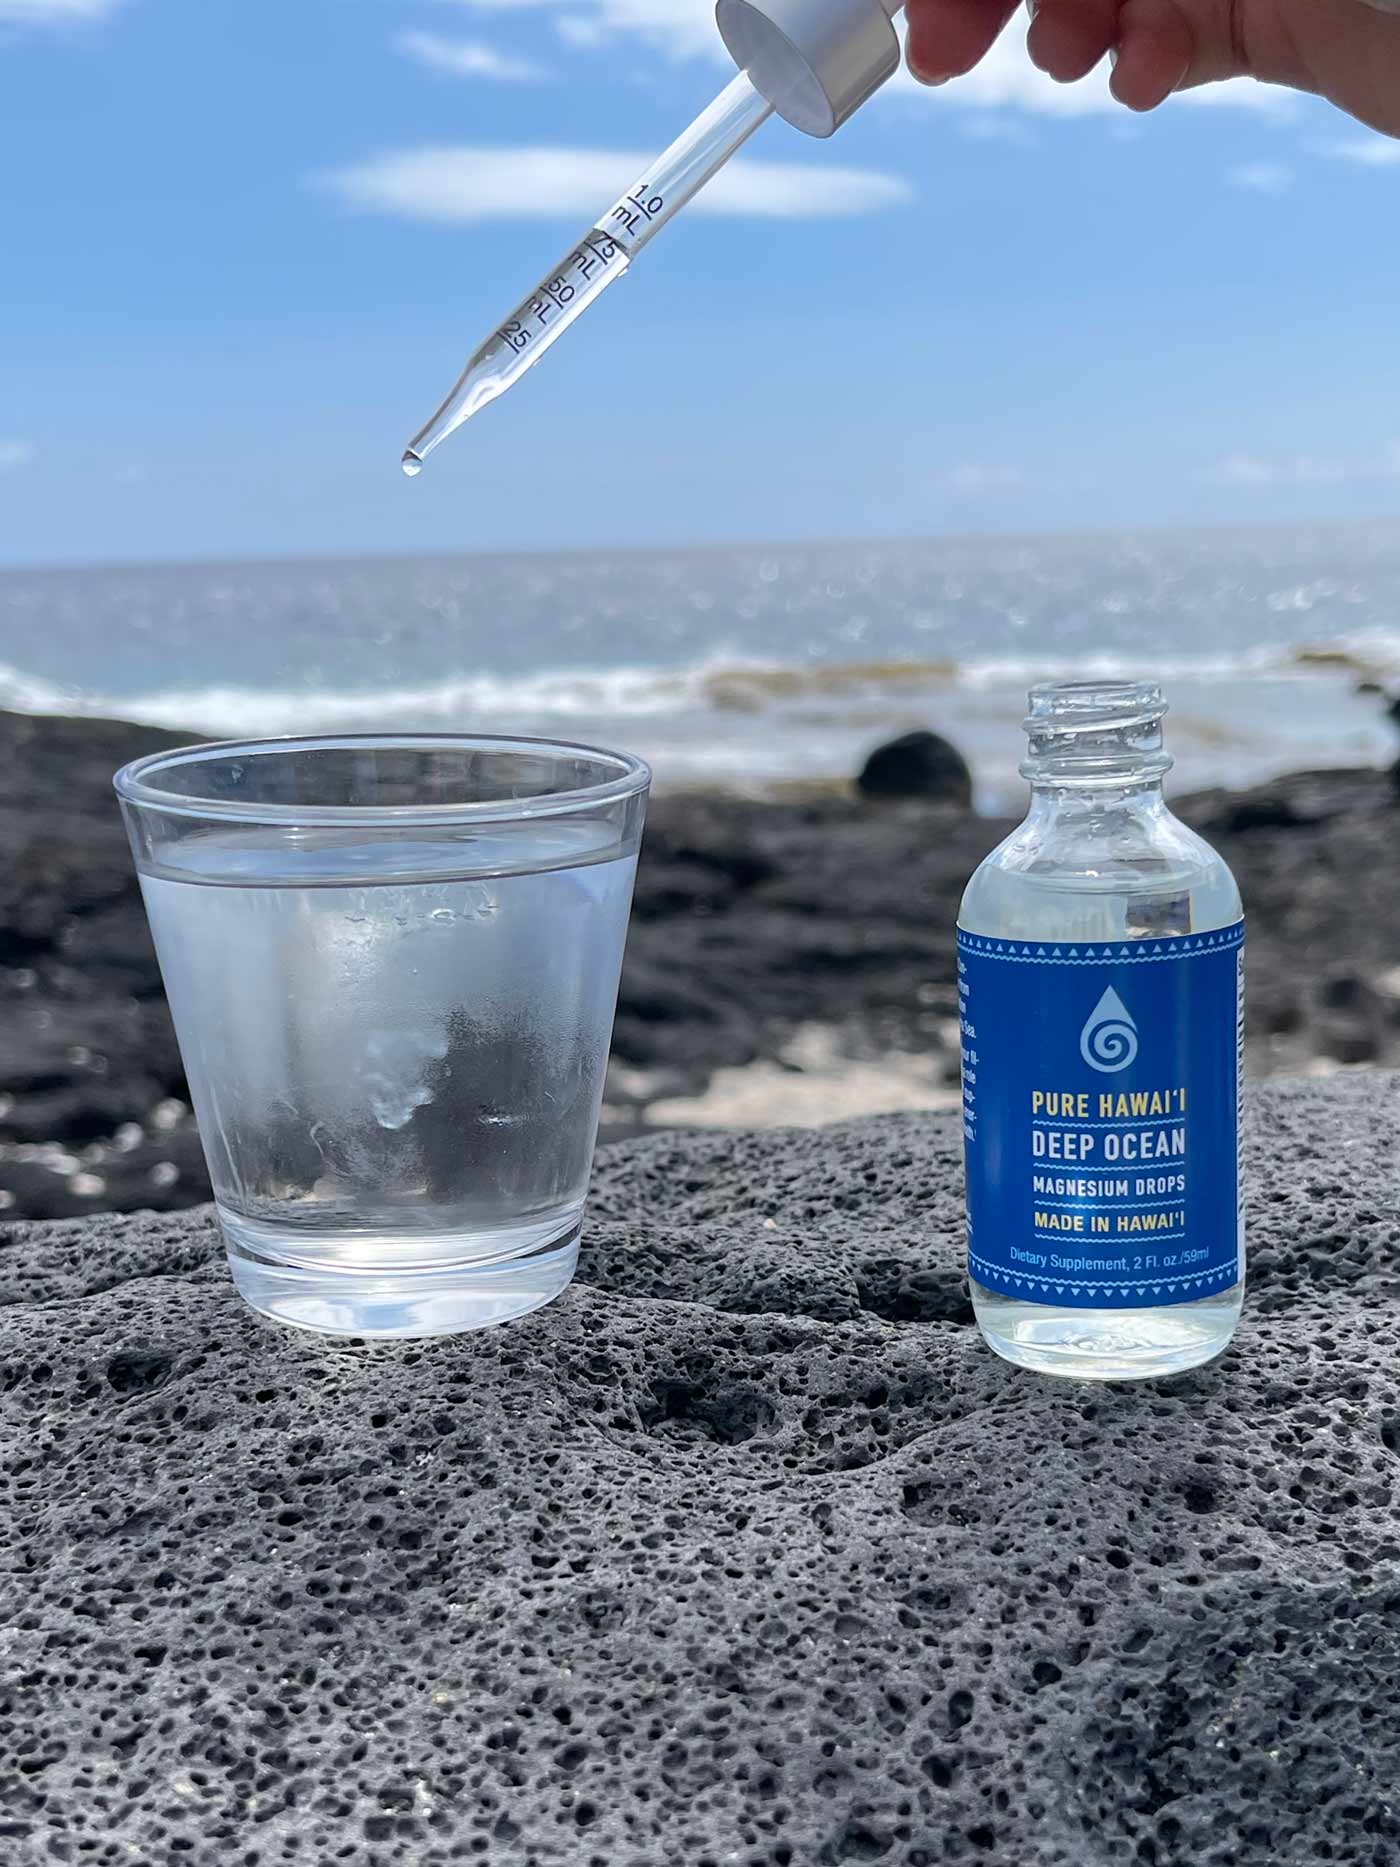 Pop-Up Mākeke - Sea Salts of Hawaii - Deep Ocean Magnesium Mineral Water Drops - In Use